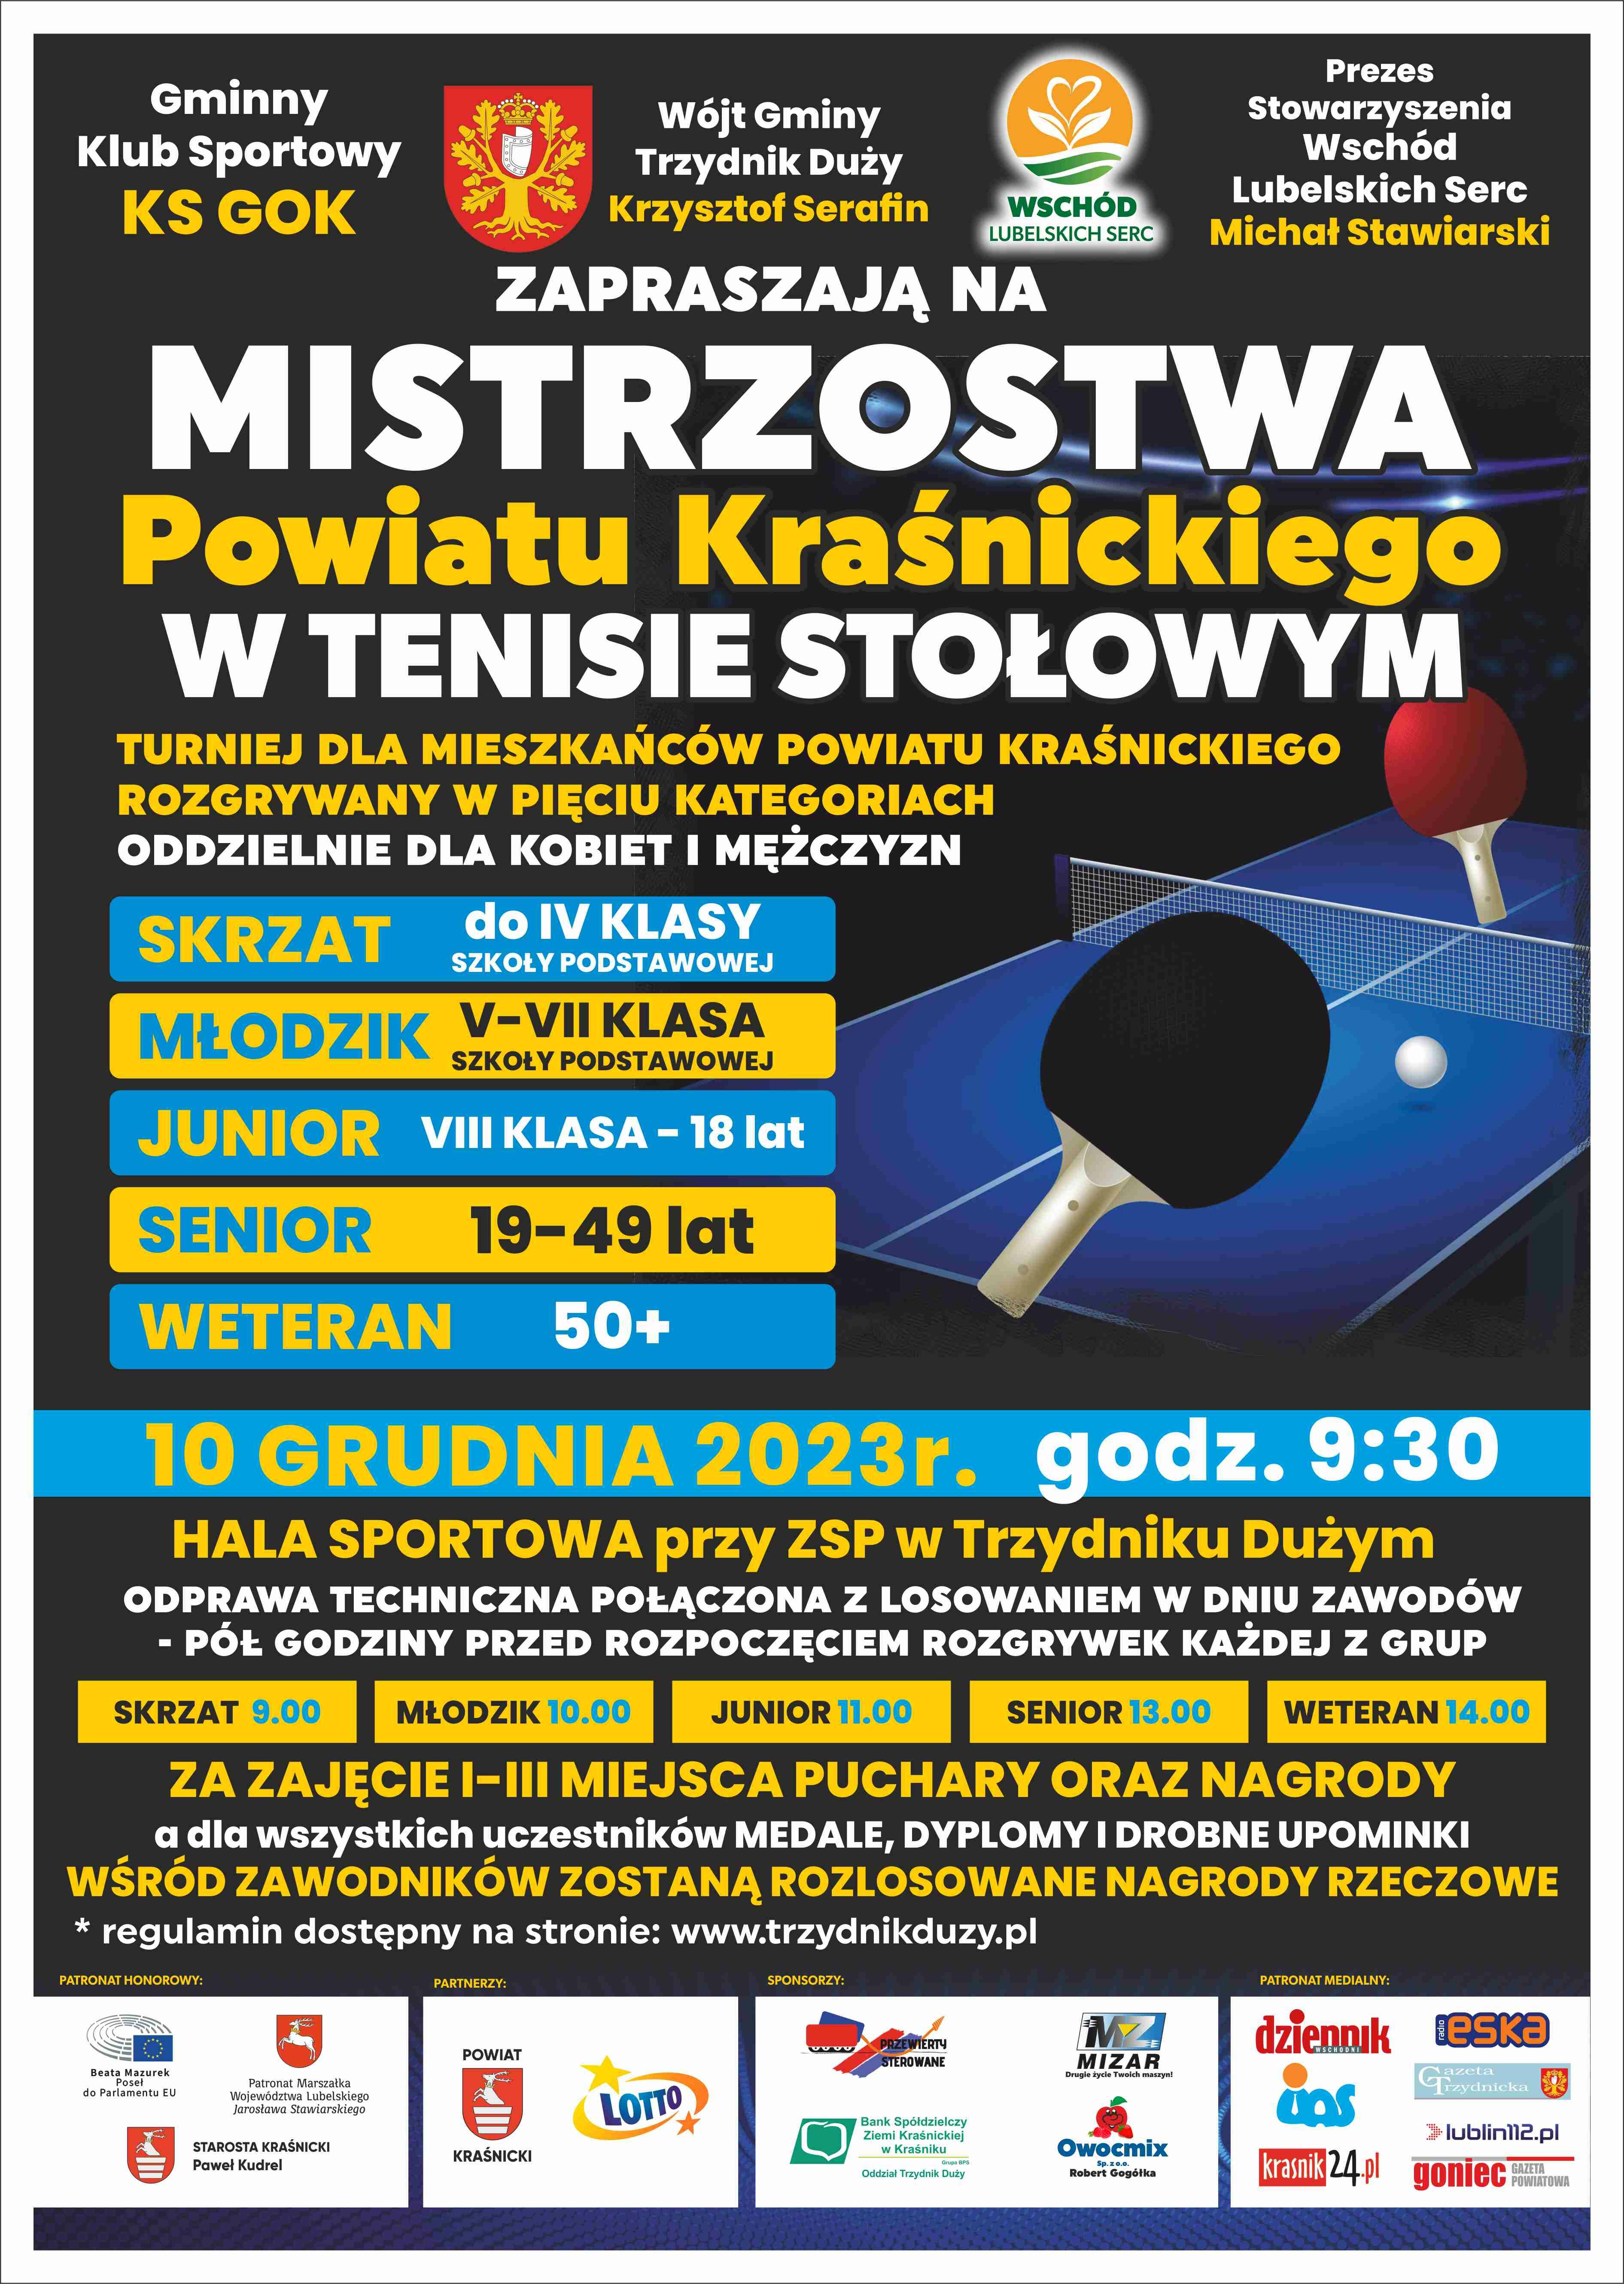 Plakat informacyjny o Mistrzostwach Powiatowym w Tenisie Stołowym. Zawiera daty, kategorie wiekowe, miejsce wydarzenia i sponsory. Dominuje czerwień i błękit.